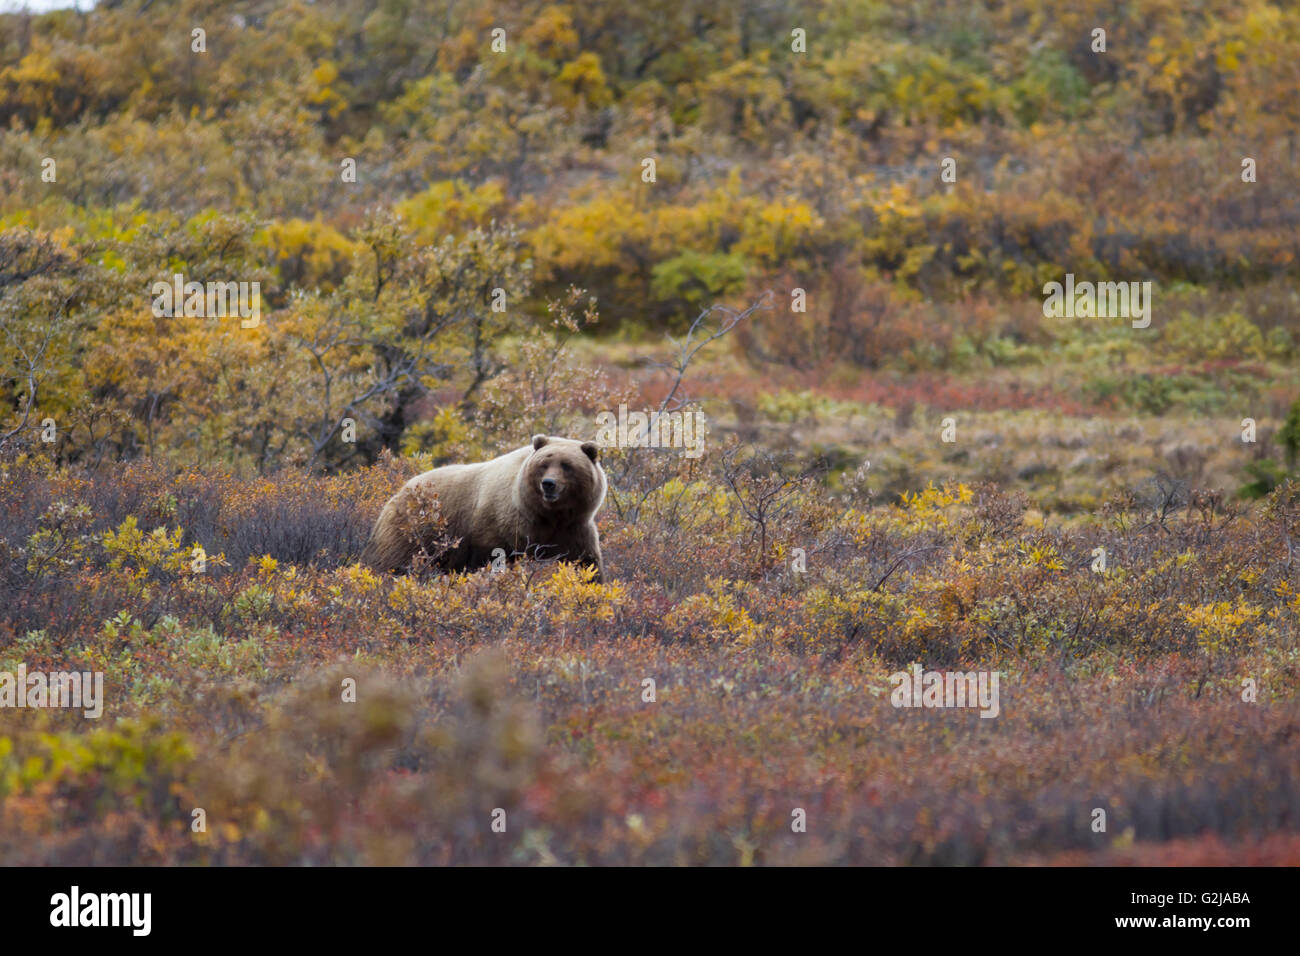 Grizzly bear, Ursus arctos horribilis, Denali national park, Alaska Stock Photo